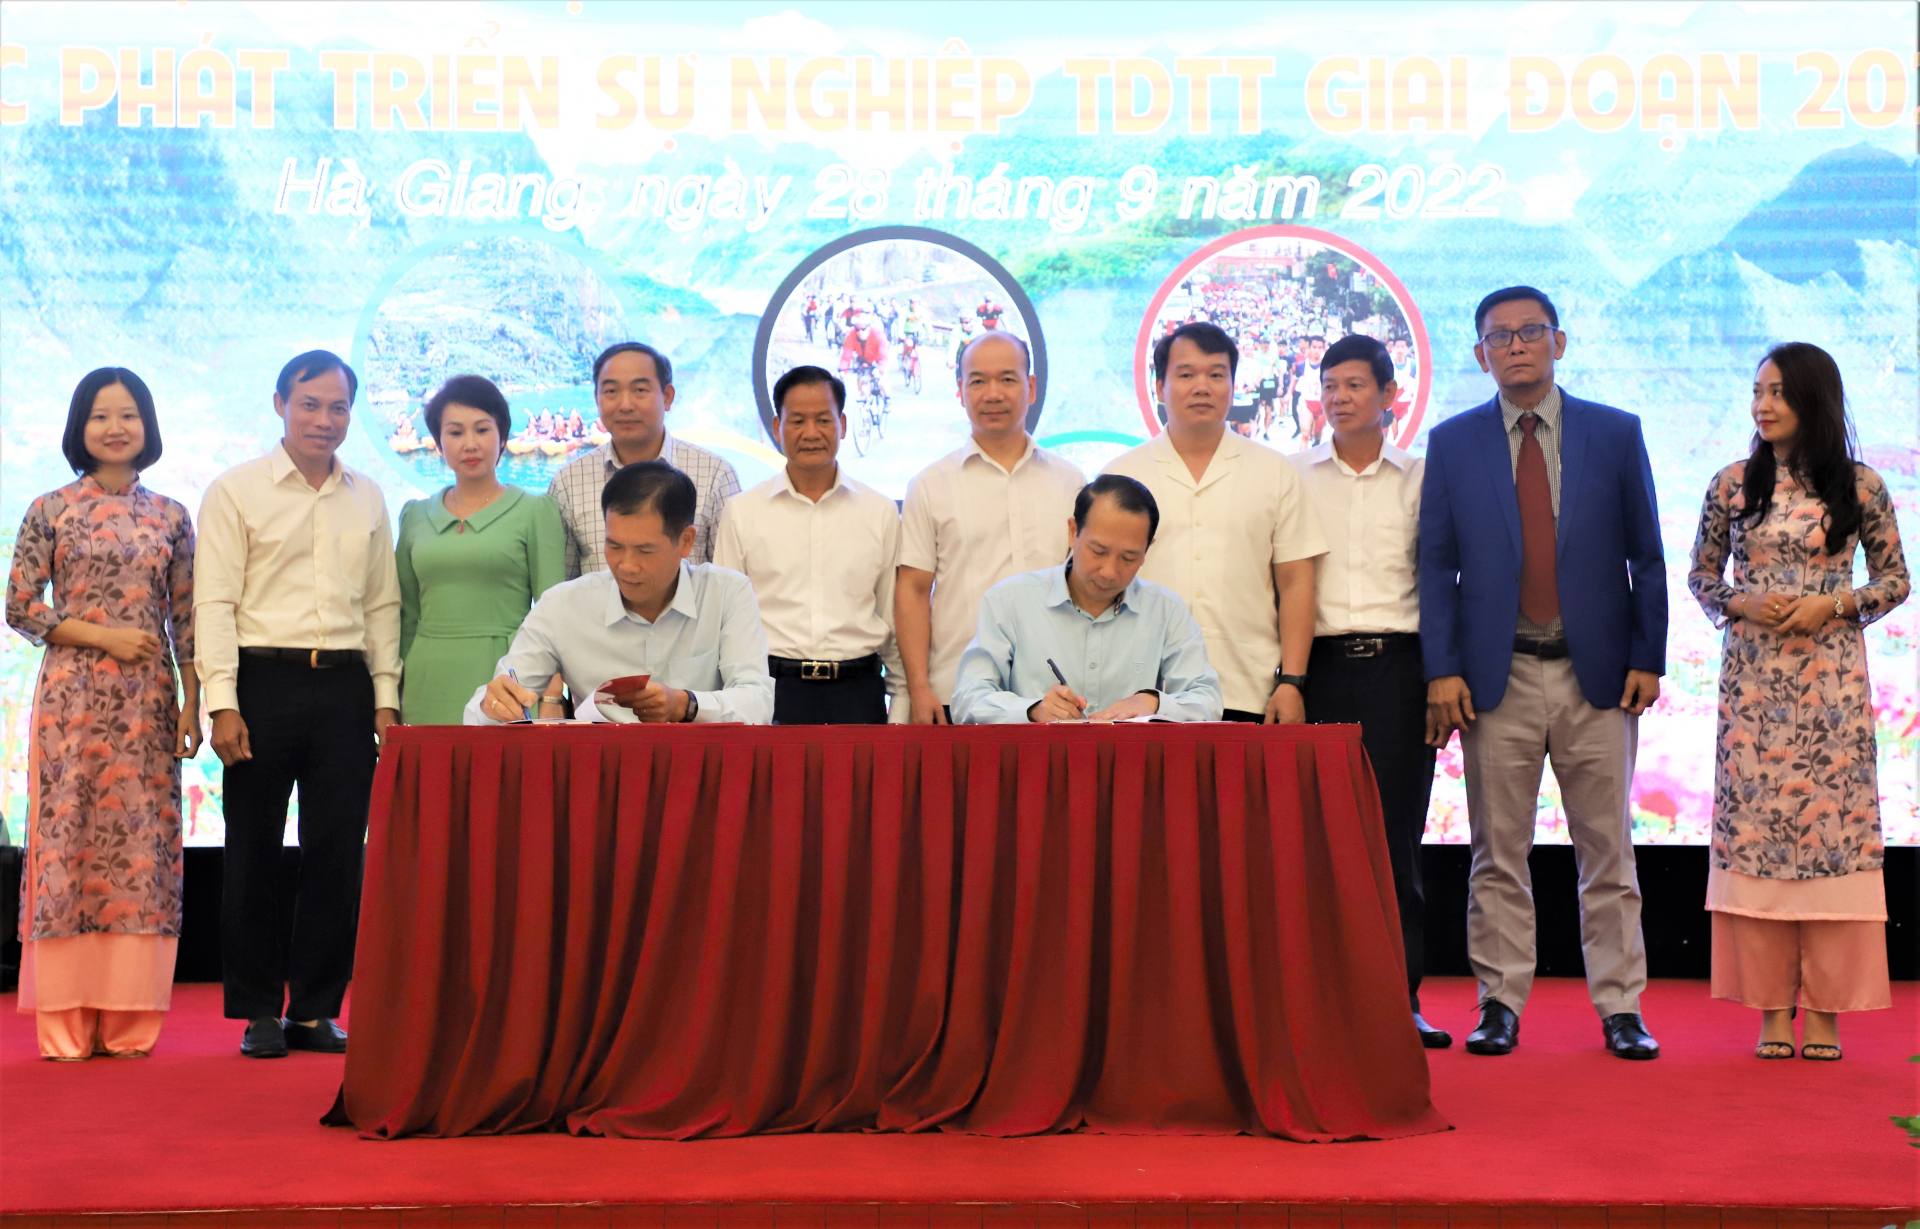 Đồng chí Trần Đức Quý, Phó Chủ tịch UBND tỉnh và đồng chí Trần Đức Phấn, Phó Tổng cục trưởng, Tổng cục TDTT ký kết chương trình hợp tác.